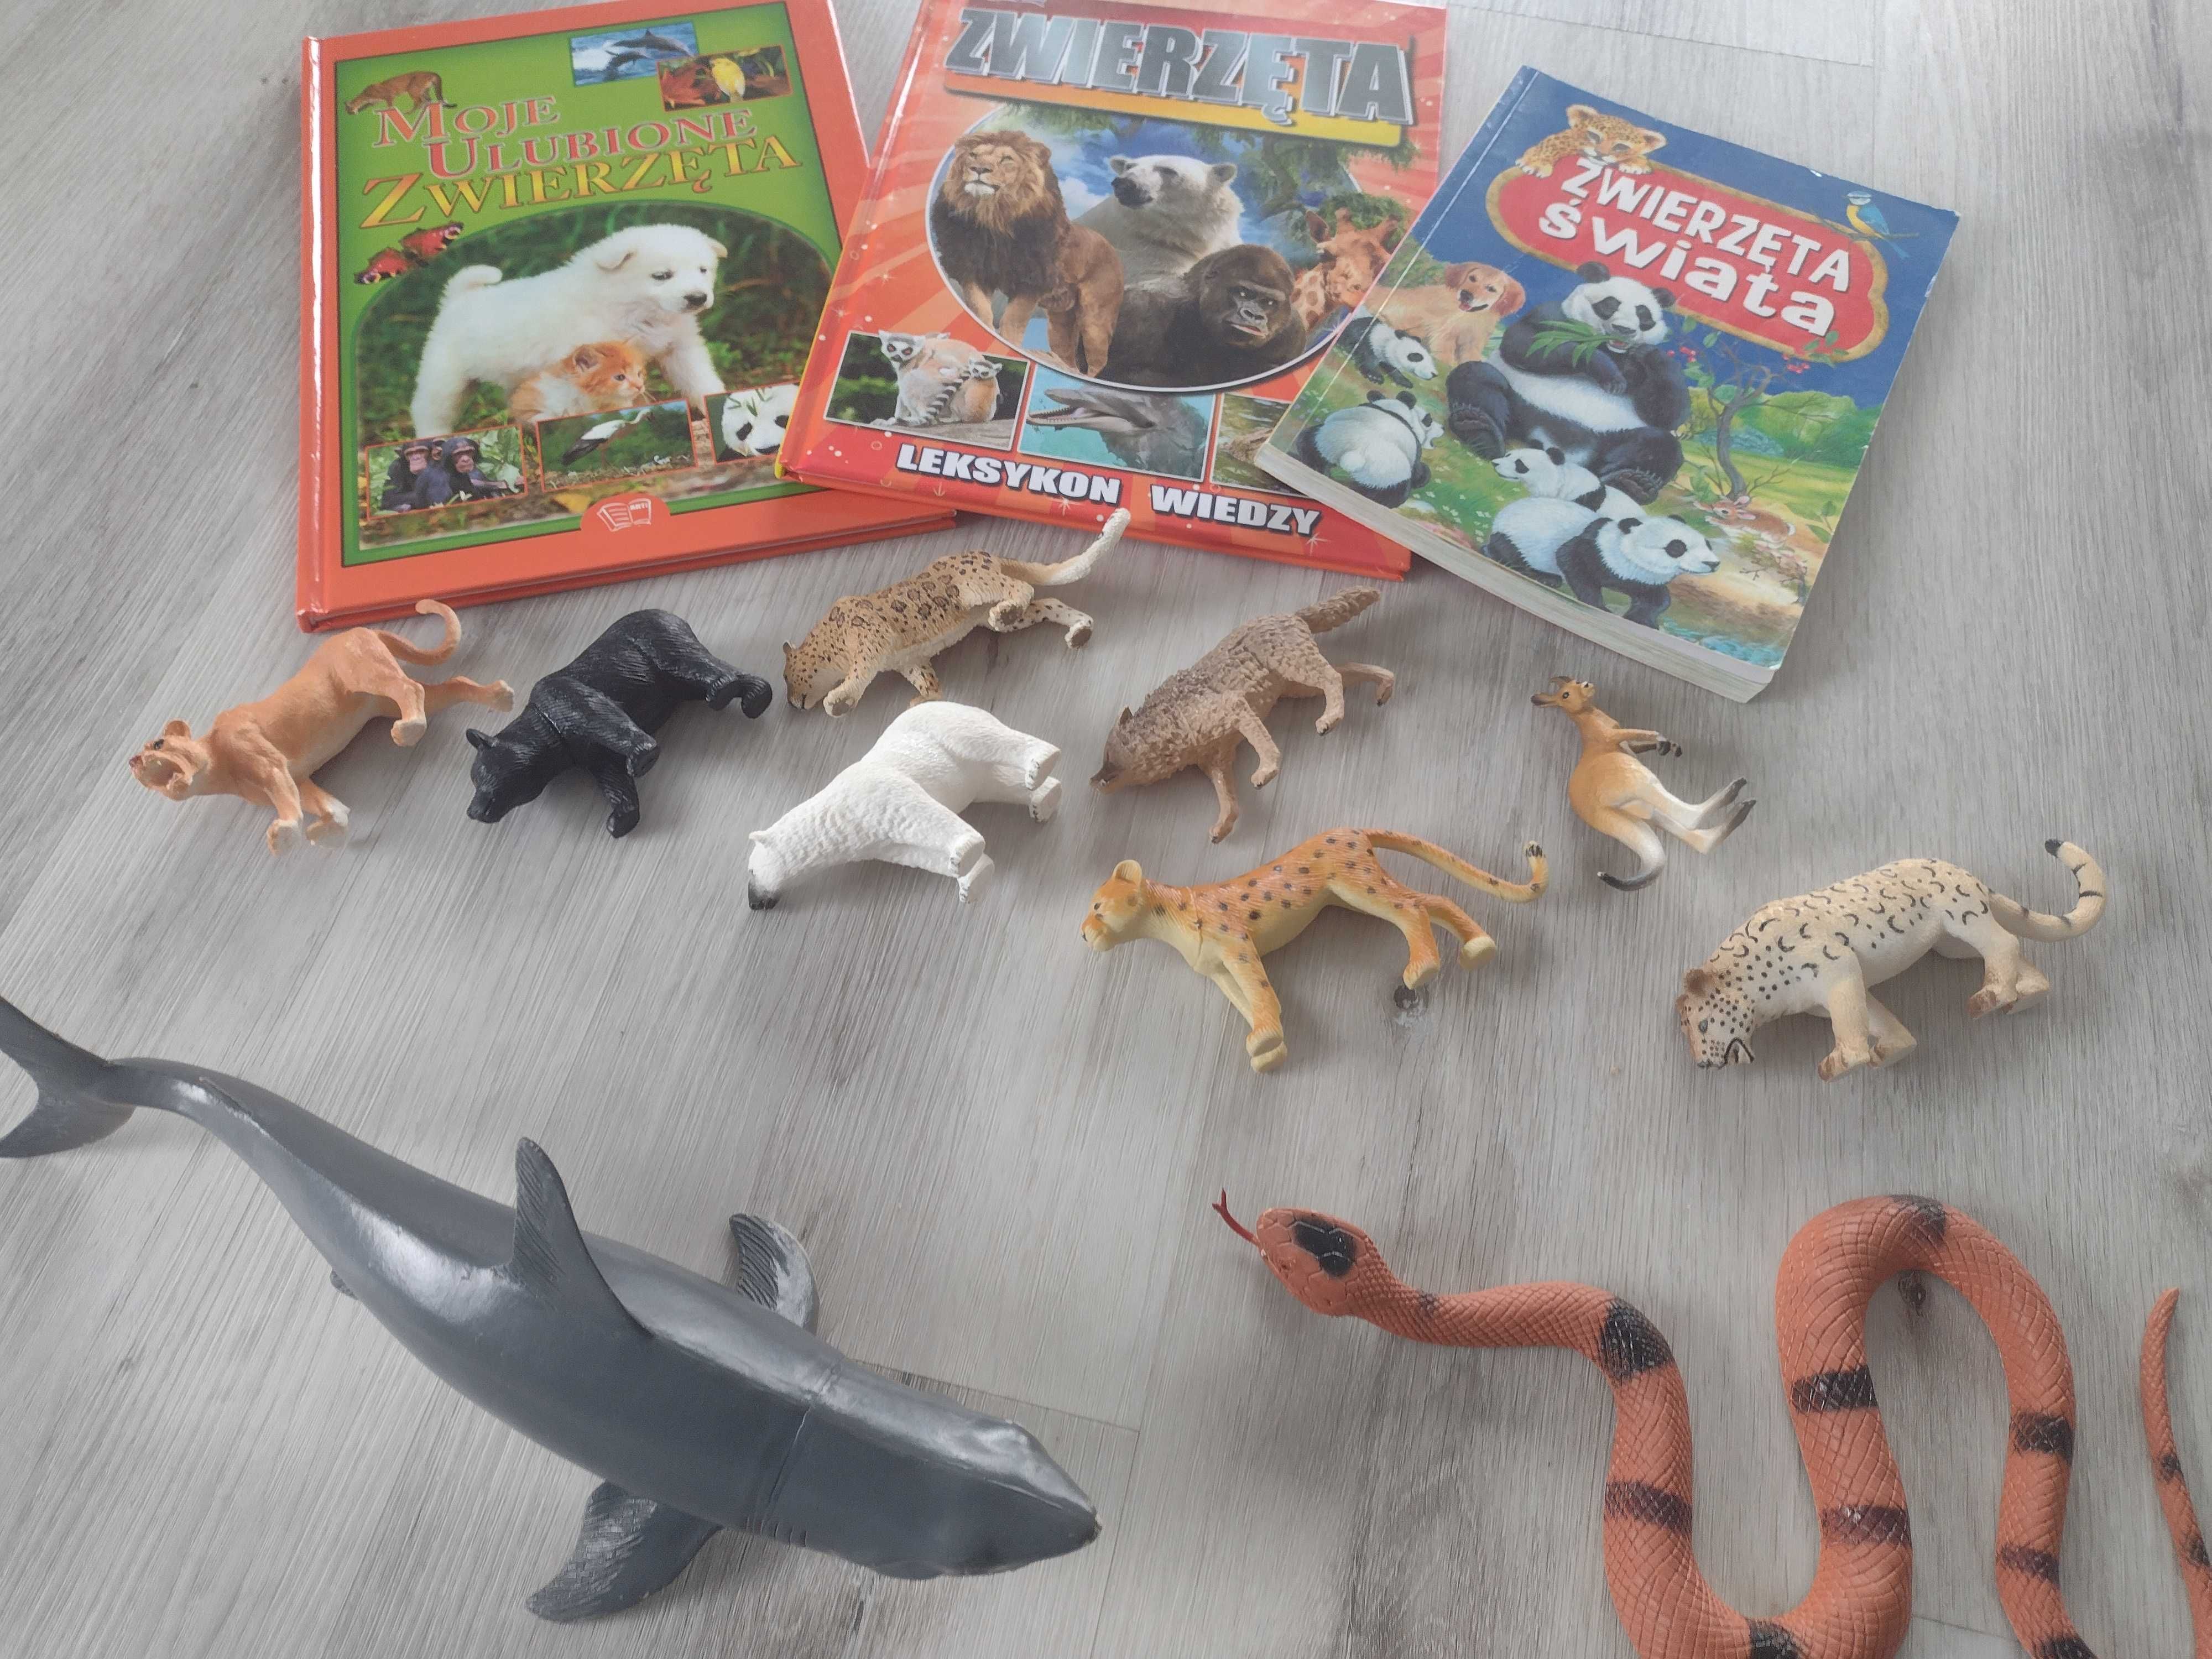 zestaw dla miłośnika zwierzątek książki plus figurki zwierząt